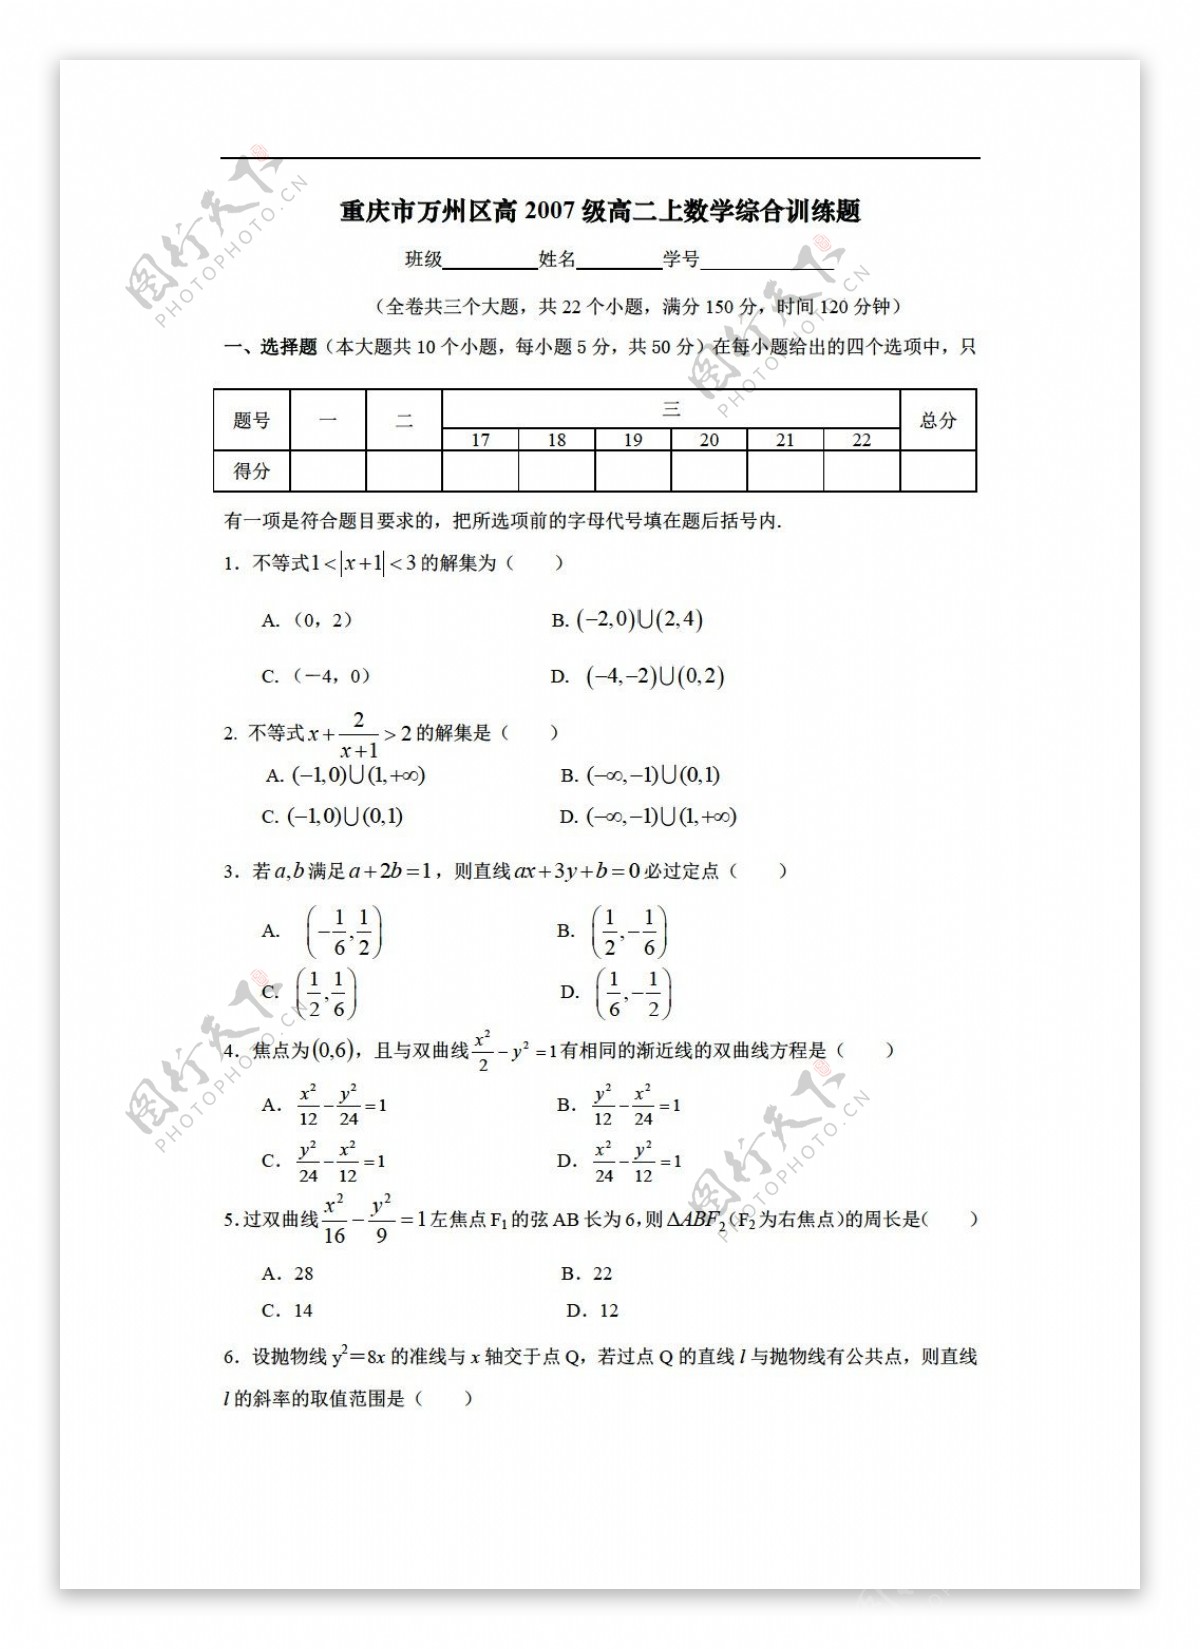 数学人教版重庆市万州区高2007级上综合训练题